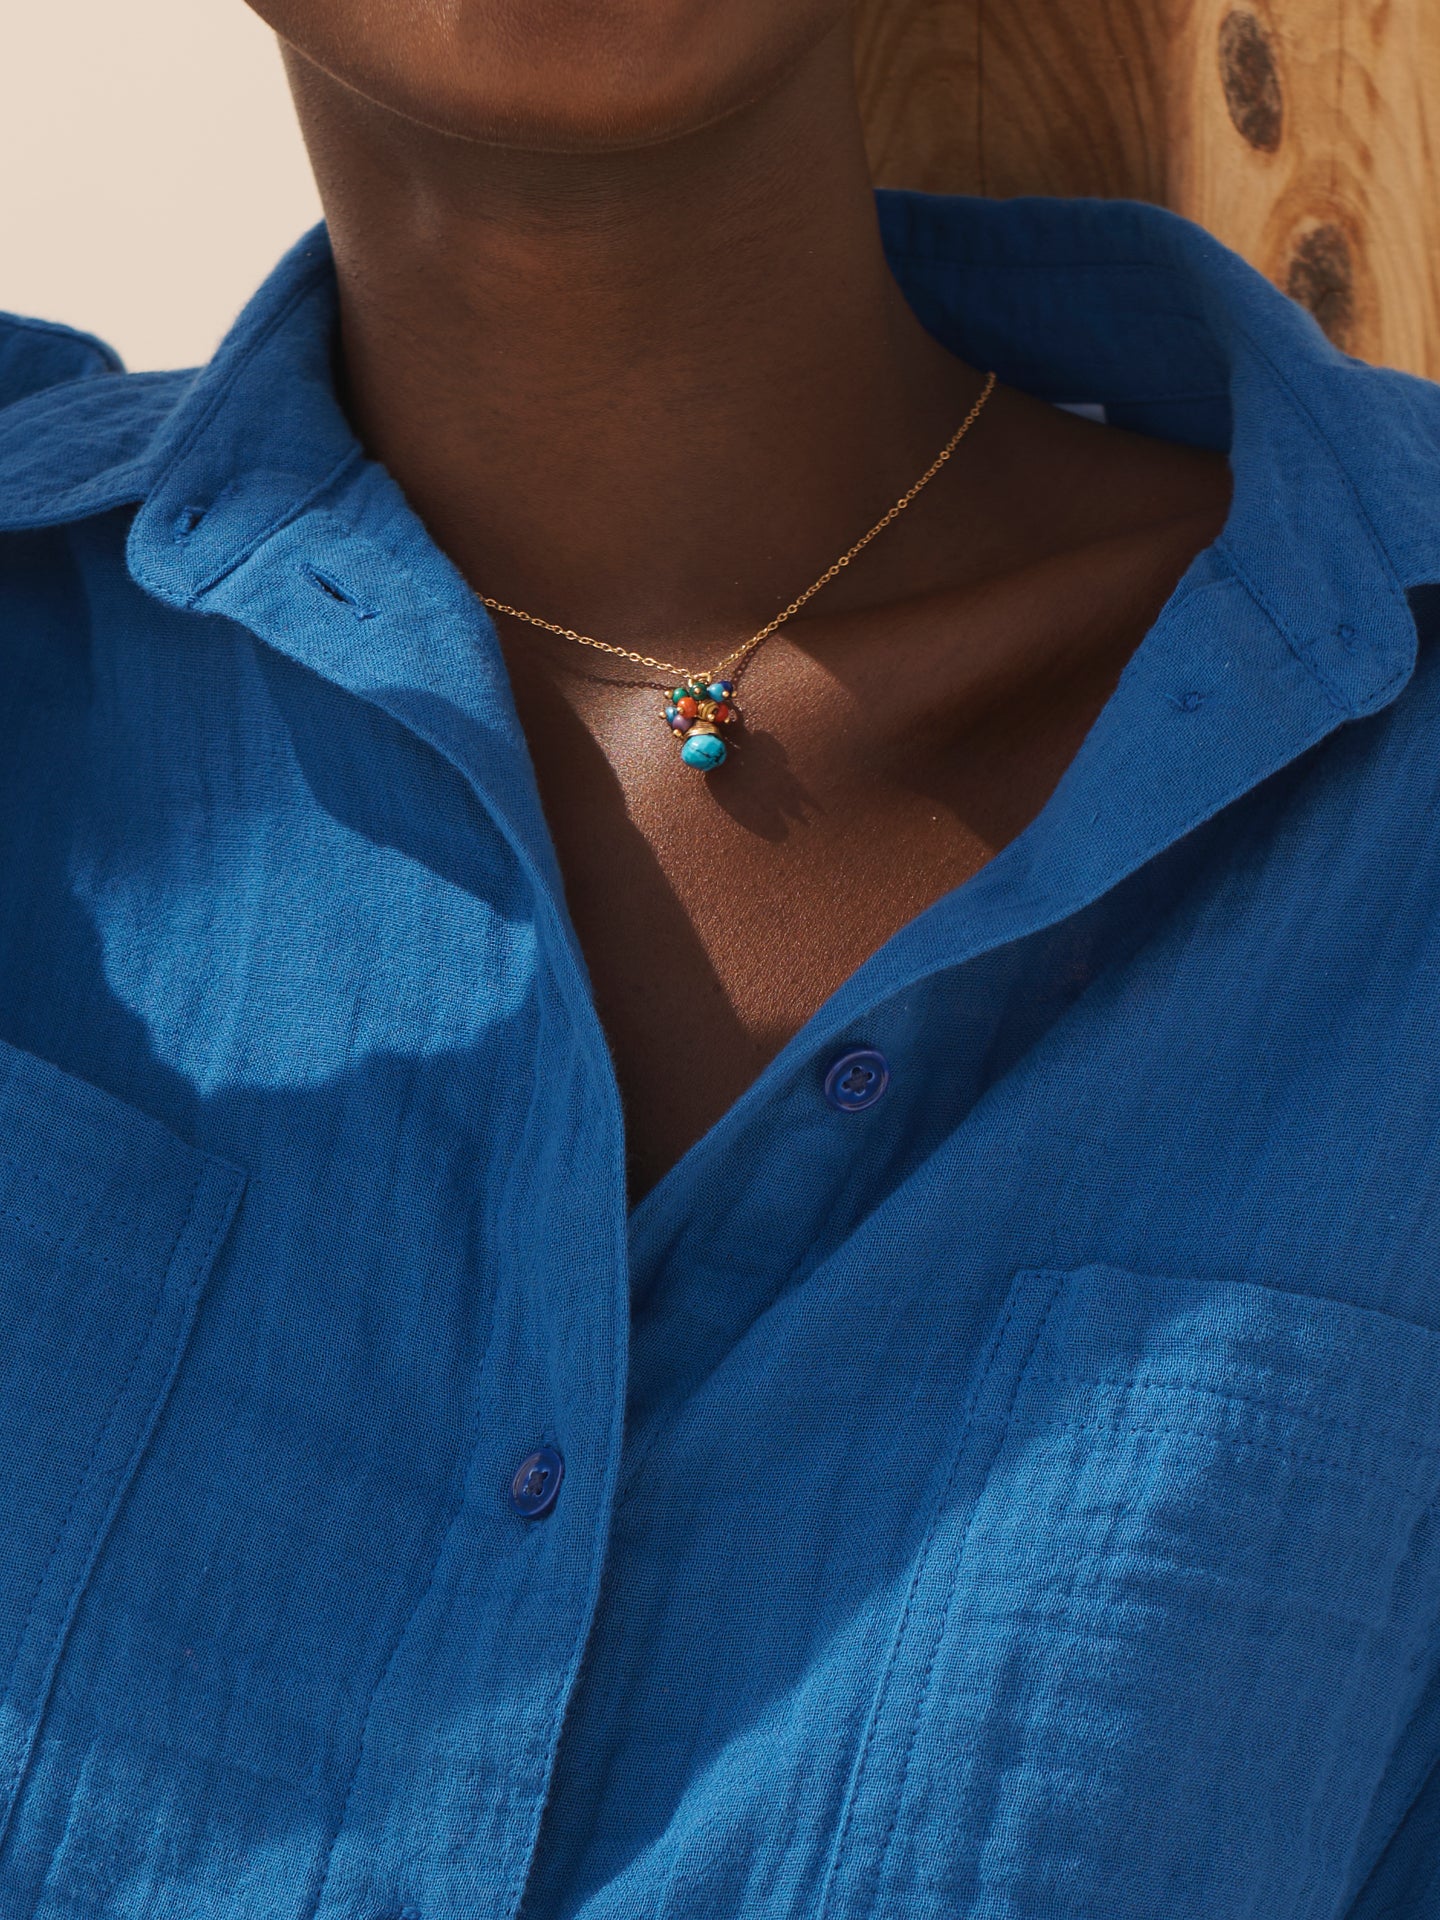 Blue pendant necklace